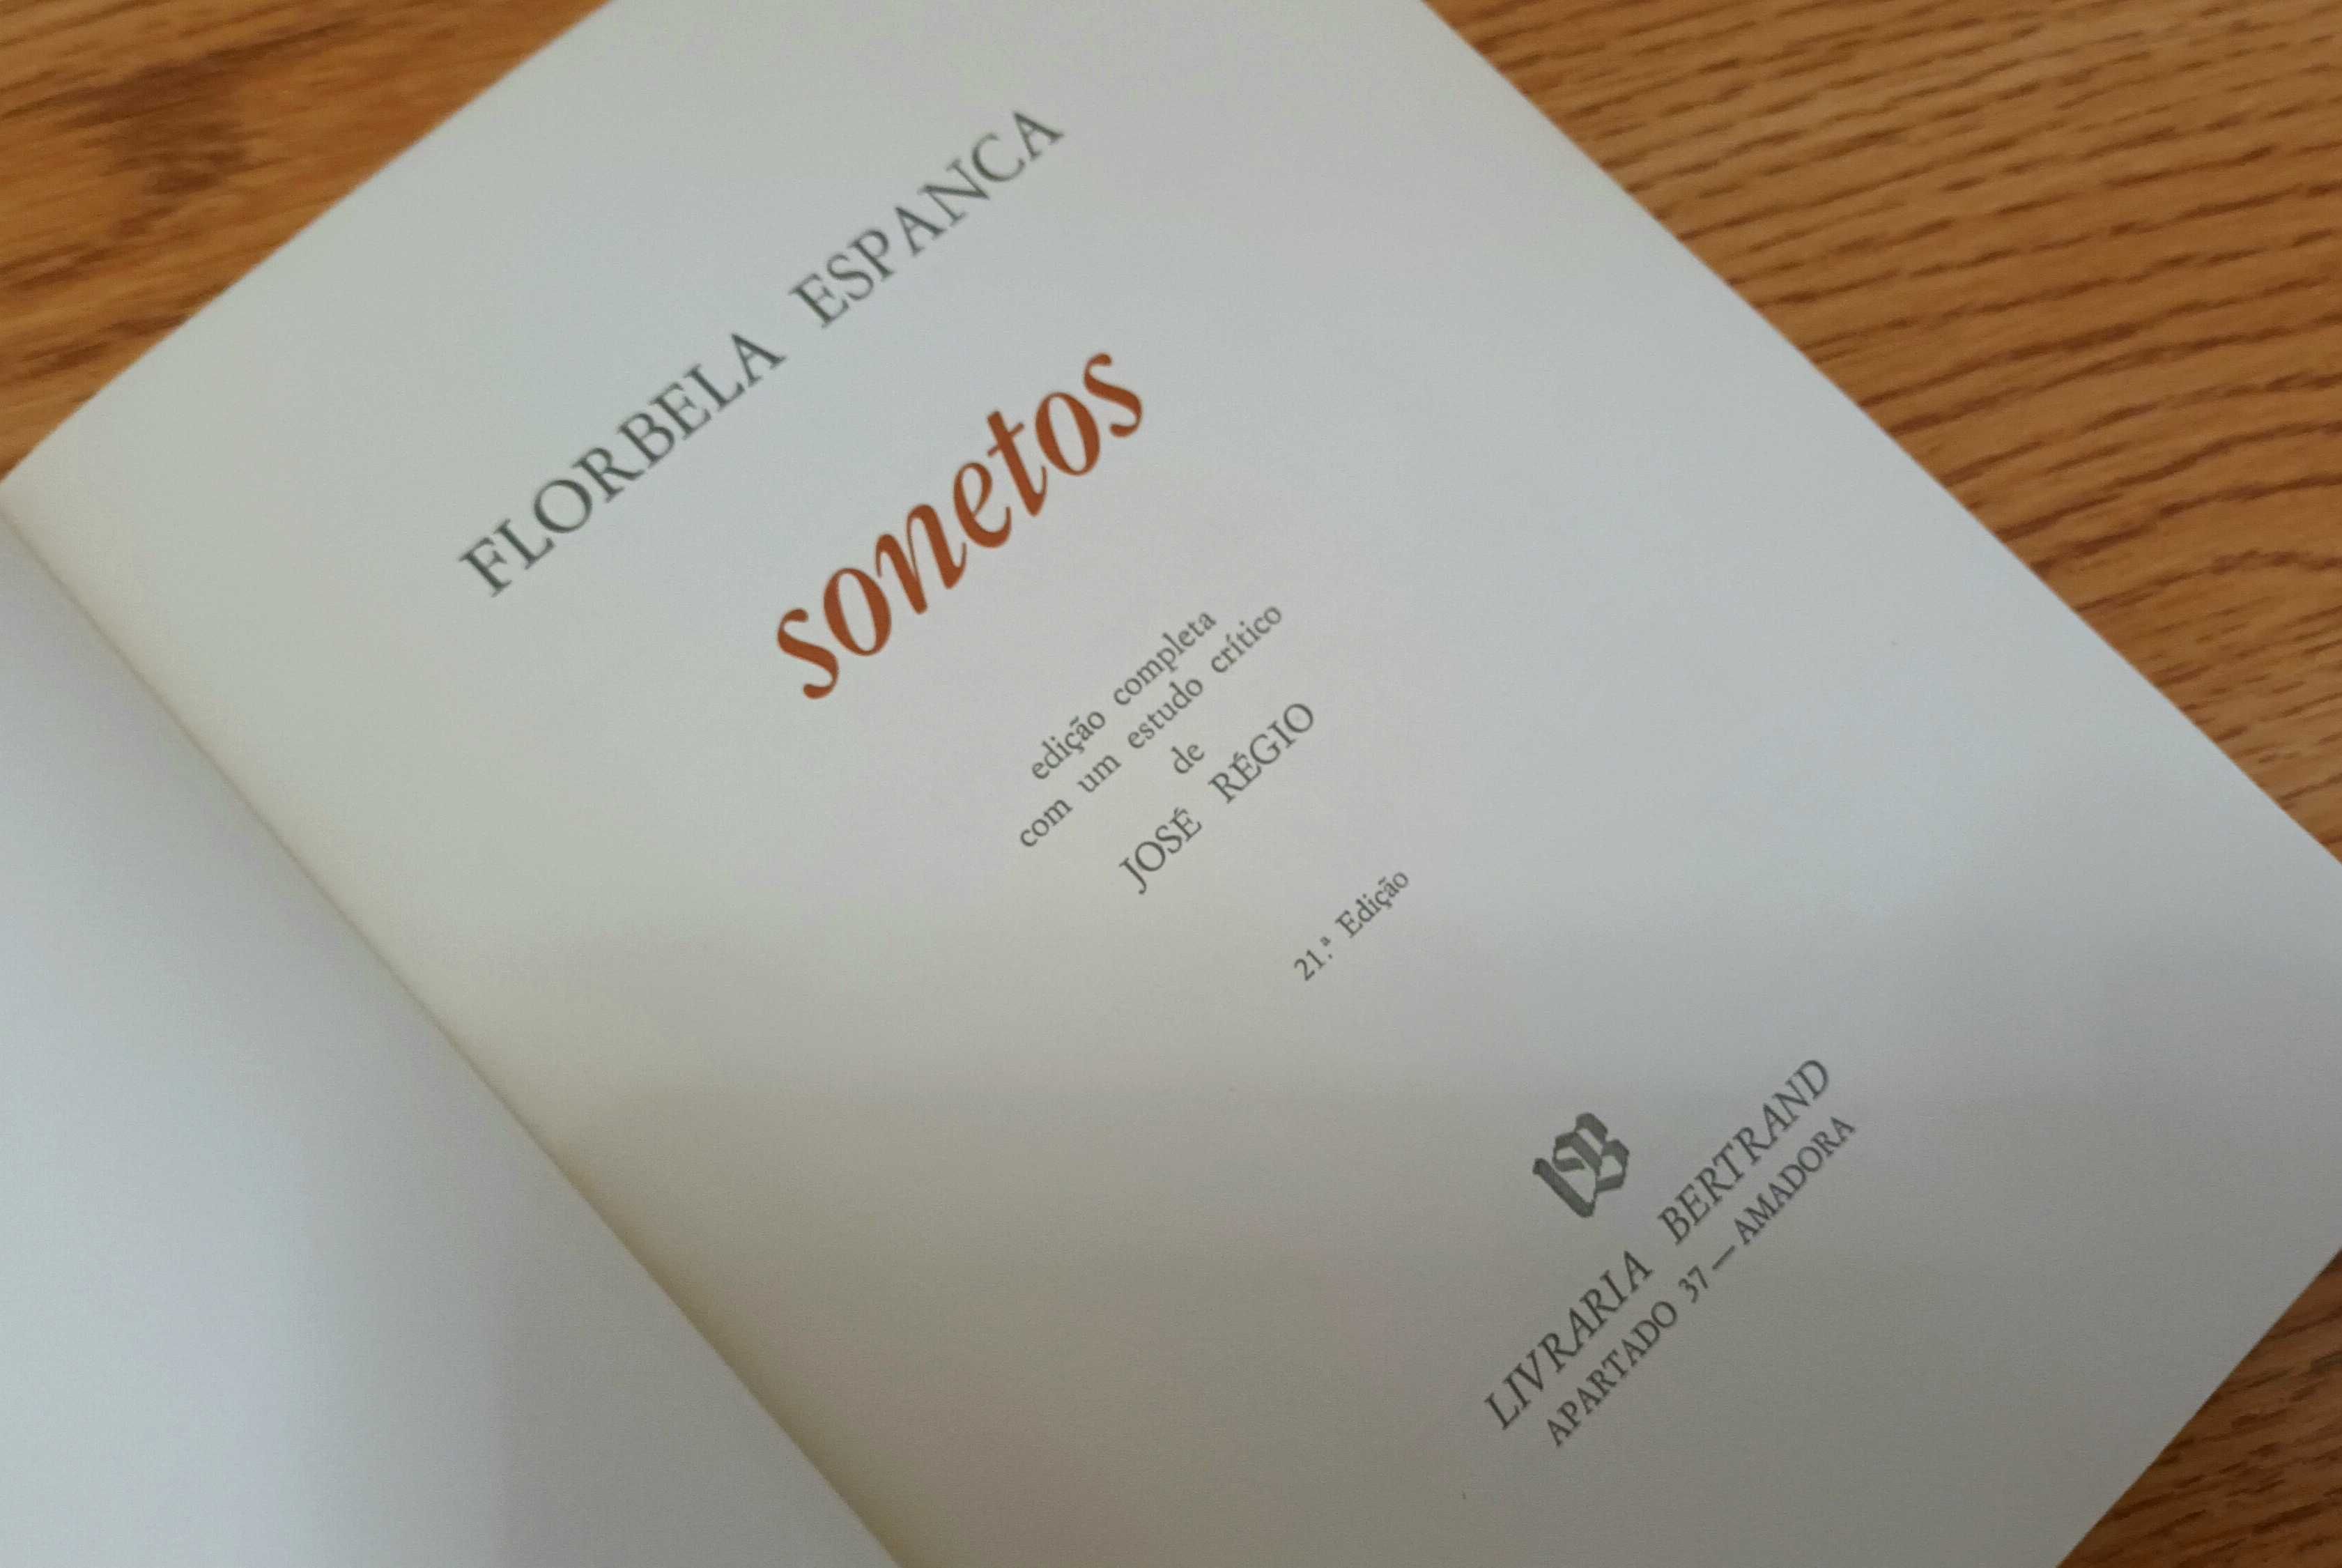 Livro "Sonetos" de Florbela Espanca